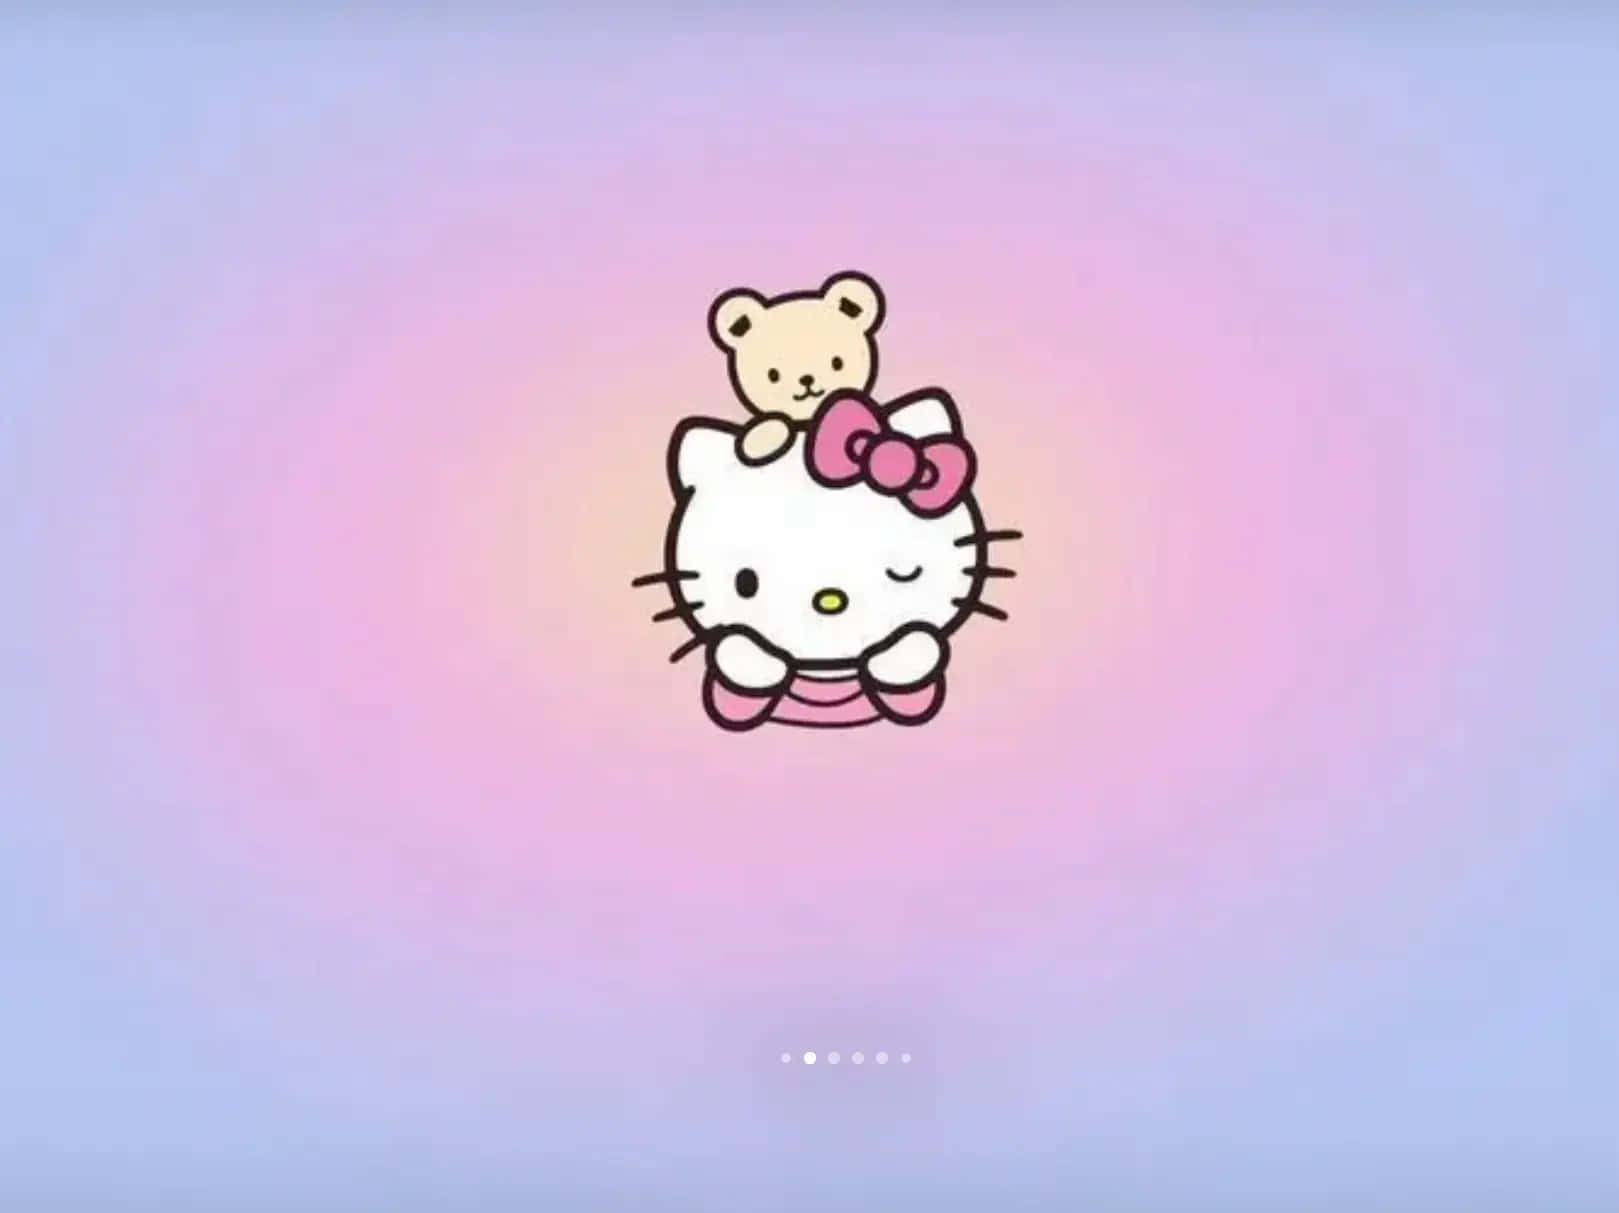 Hello Kittyand Teddy Bear Illustration Wallpaper